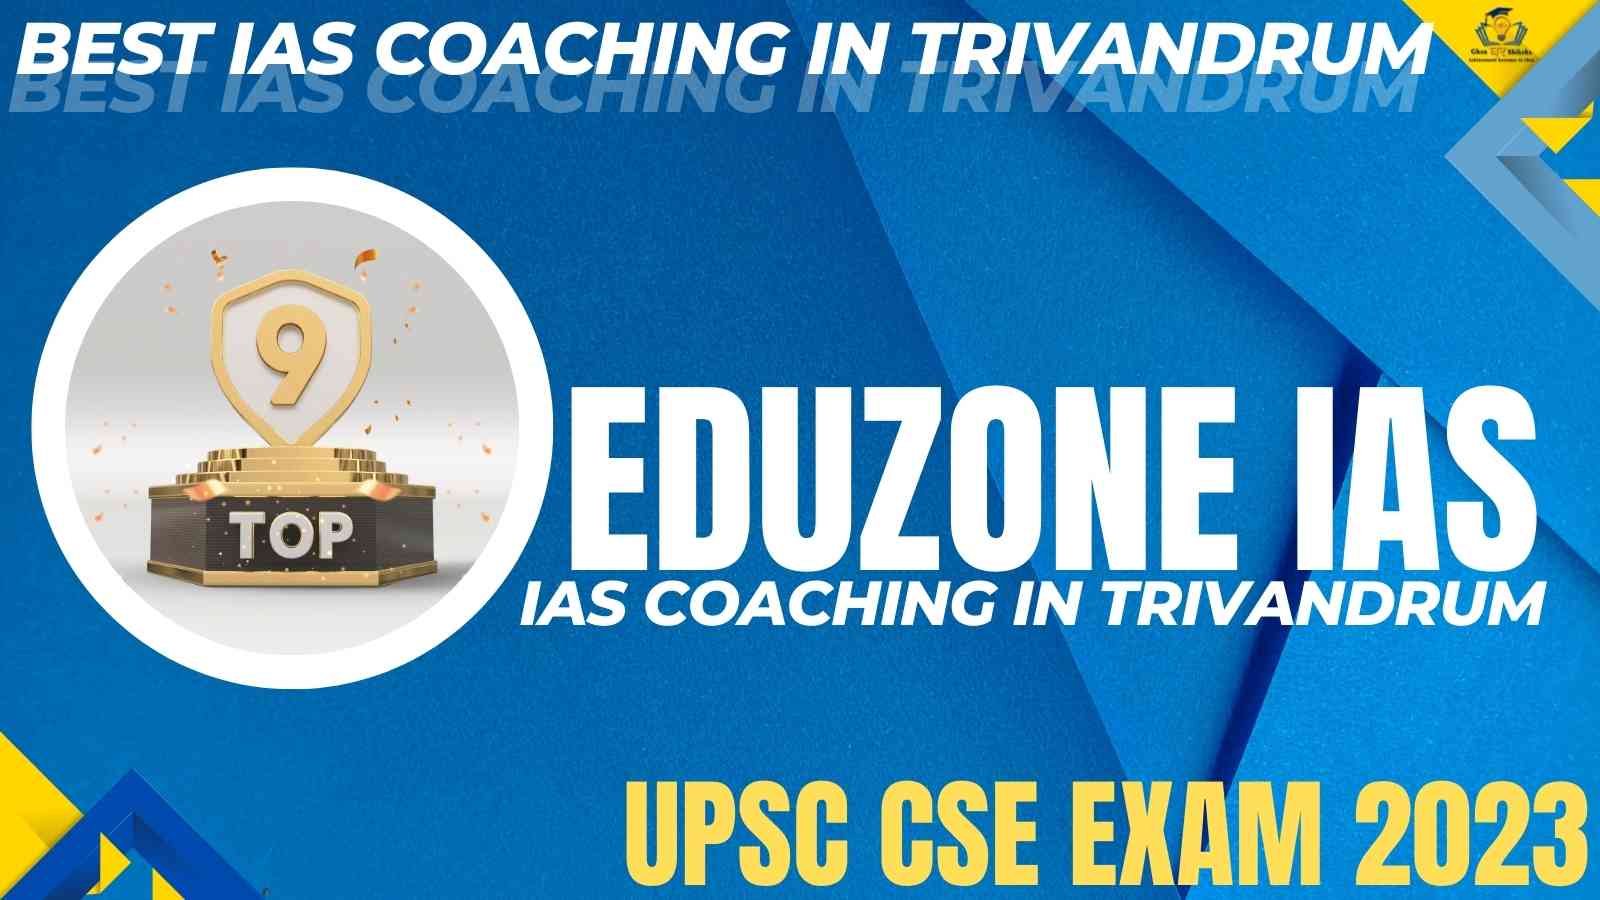 IAS Coaching In Trivandrum